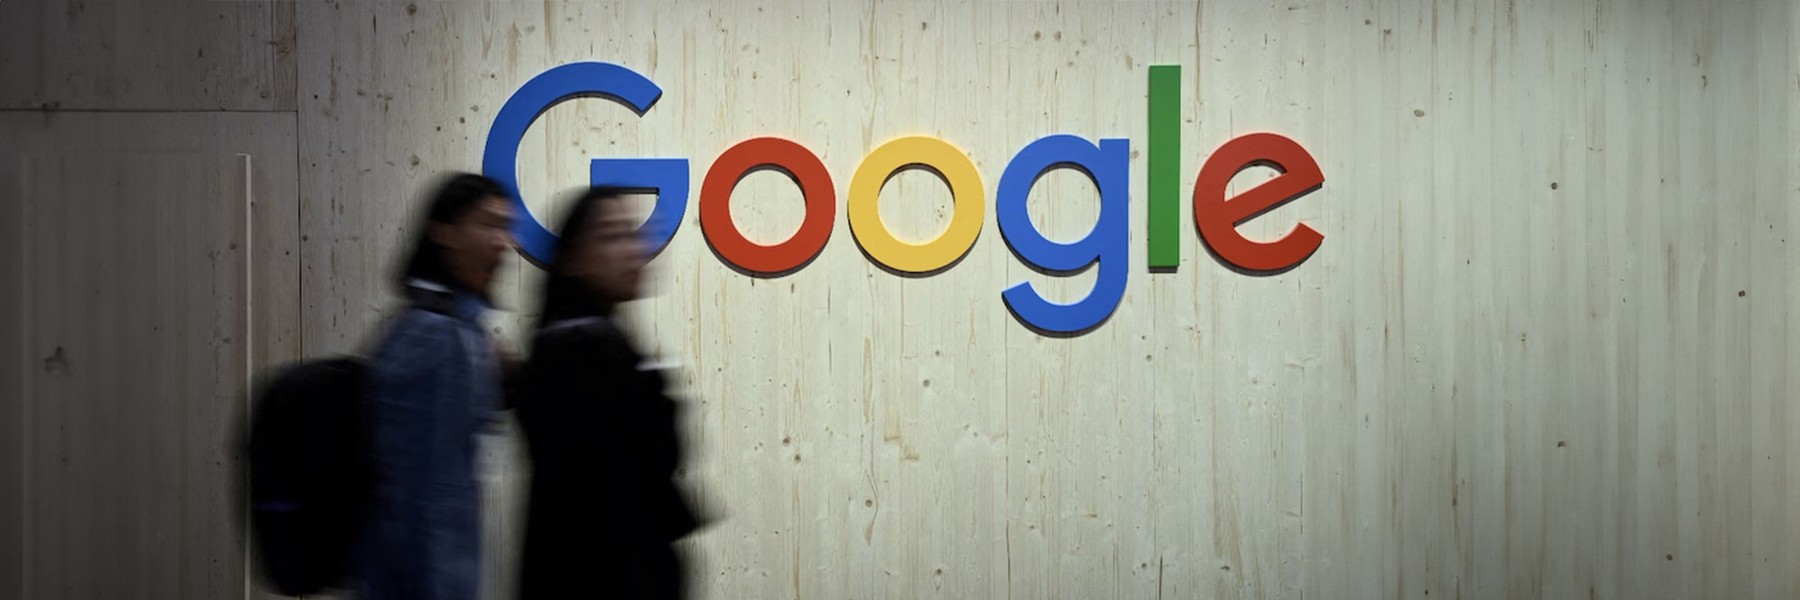 Google despide a cientos de empleados y traslada algunos puestos a India y México